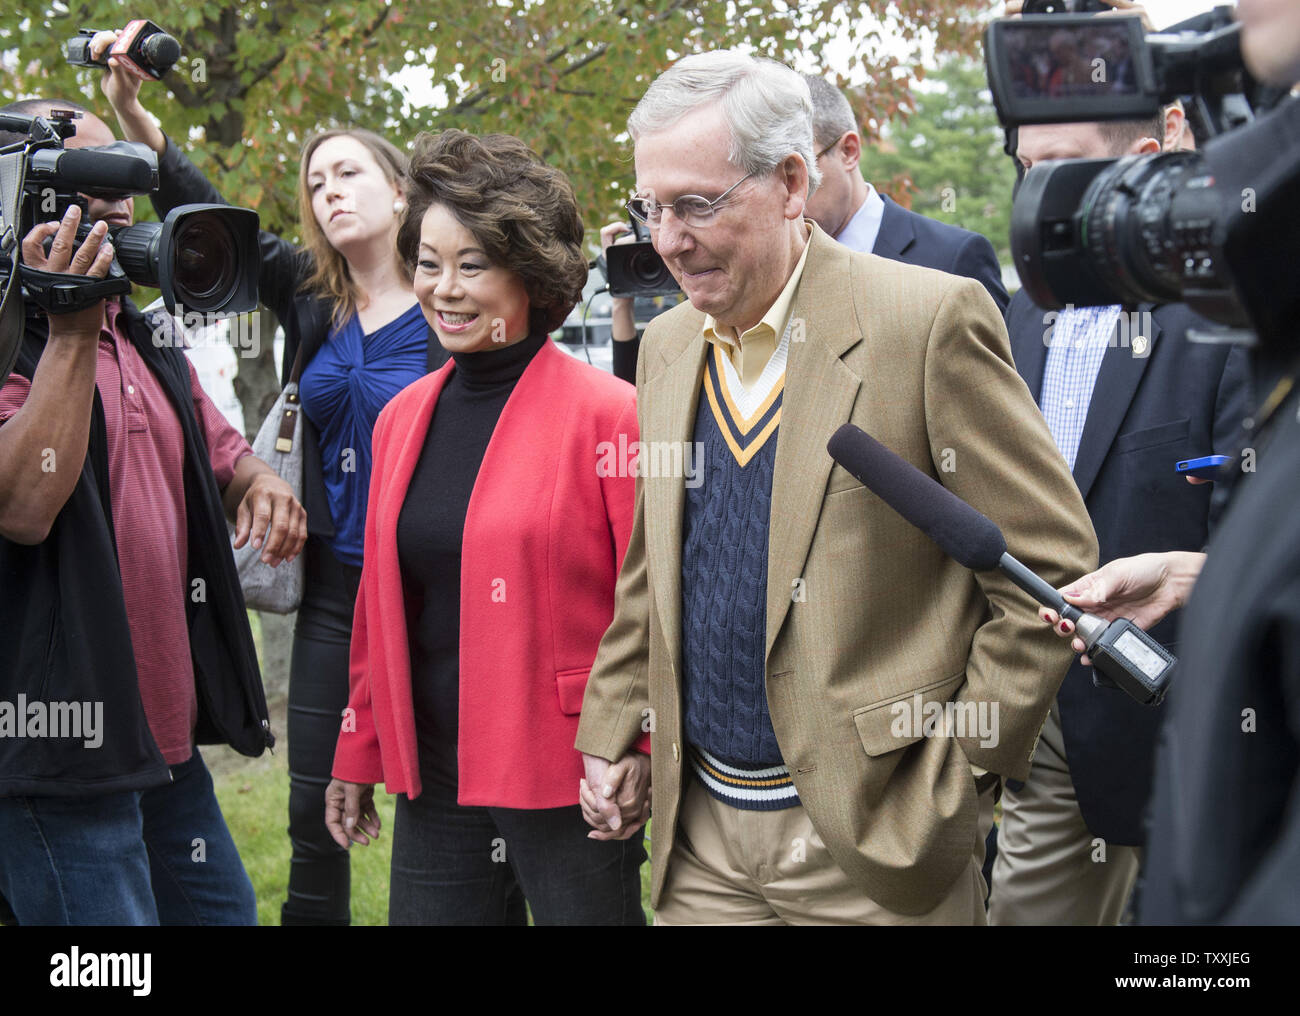 Senat Minderheit Führer Mitch McConnell, R-KY, und seine Frau Elaine Chao verlassen nach der Abstimmung in Louisville, Kentucky am 4. November 2014. UPI/Kevin Dietsch Stockfoto